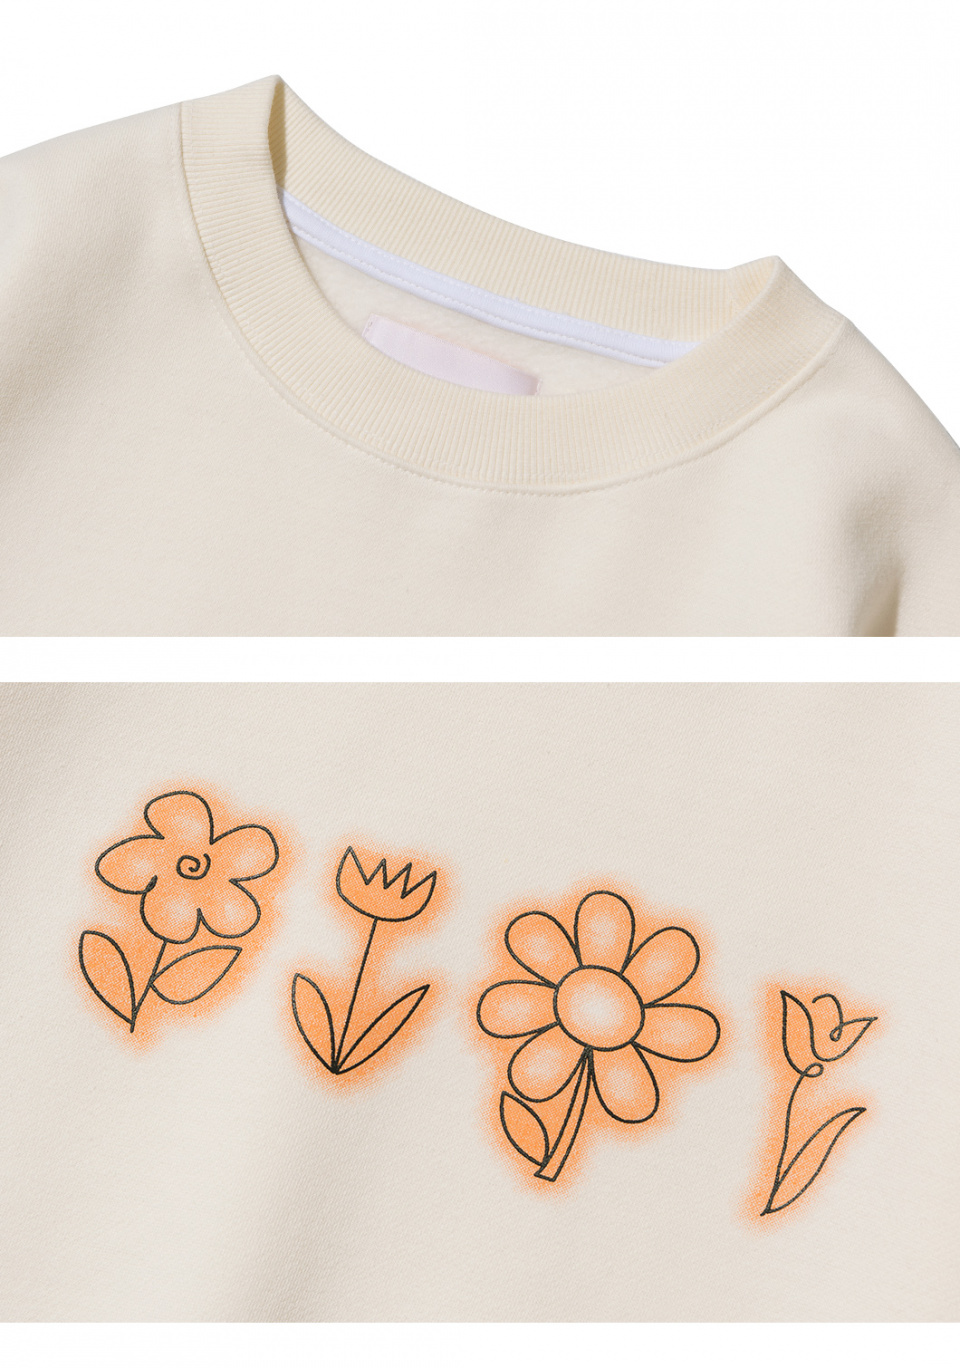 로씨로씨(ROCCI ROCCI) Flower Drawing Sweatshirt [CREAM]